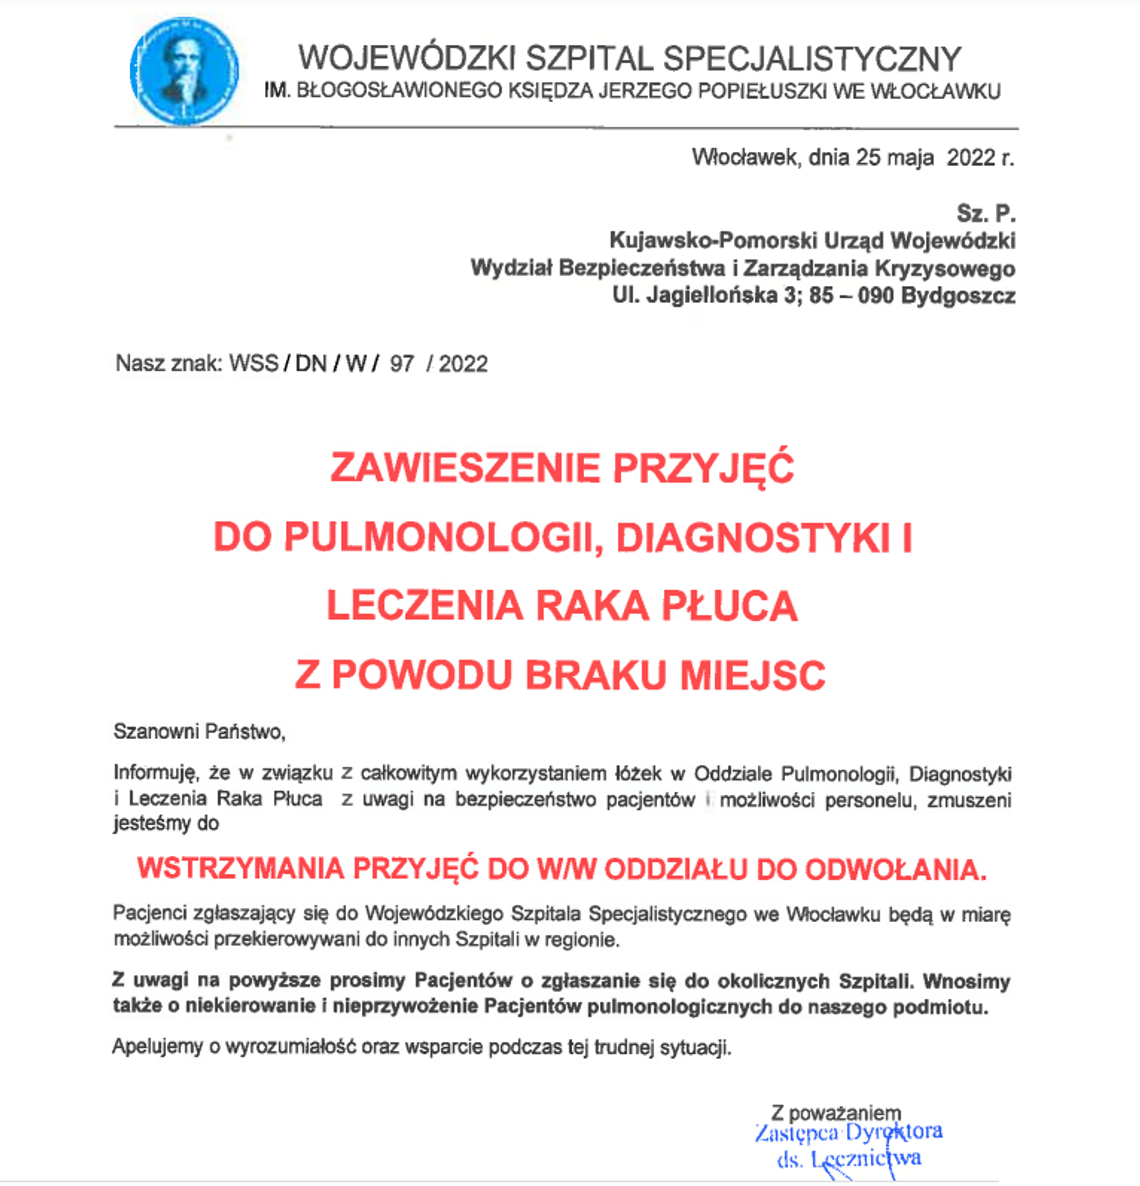 Zawieszenie przyjęć do oddziału Pulmonologii, Diagnostyki i Leczenia Raka Płuca w Wojewódzkim Szpitalu Specjalistycznym we Włocławku